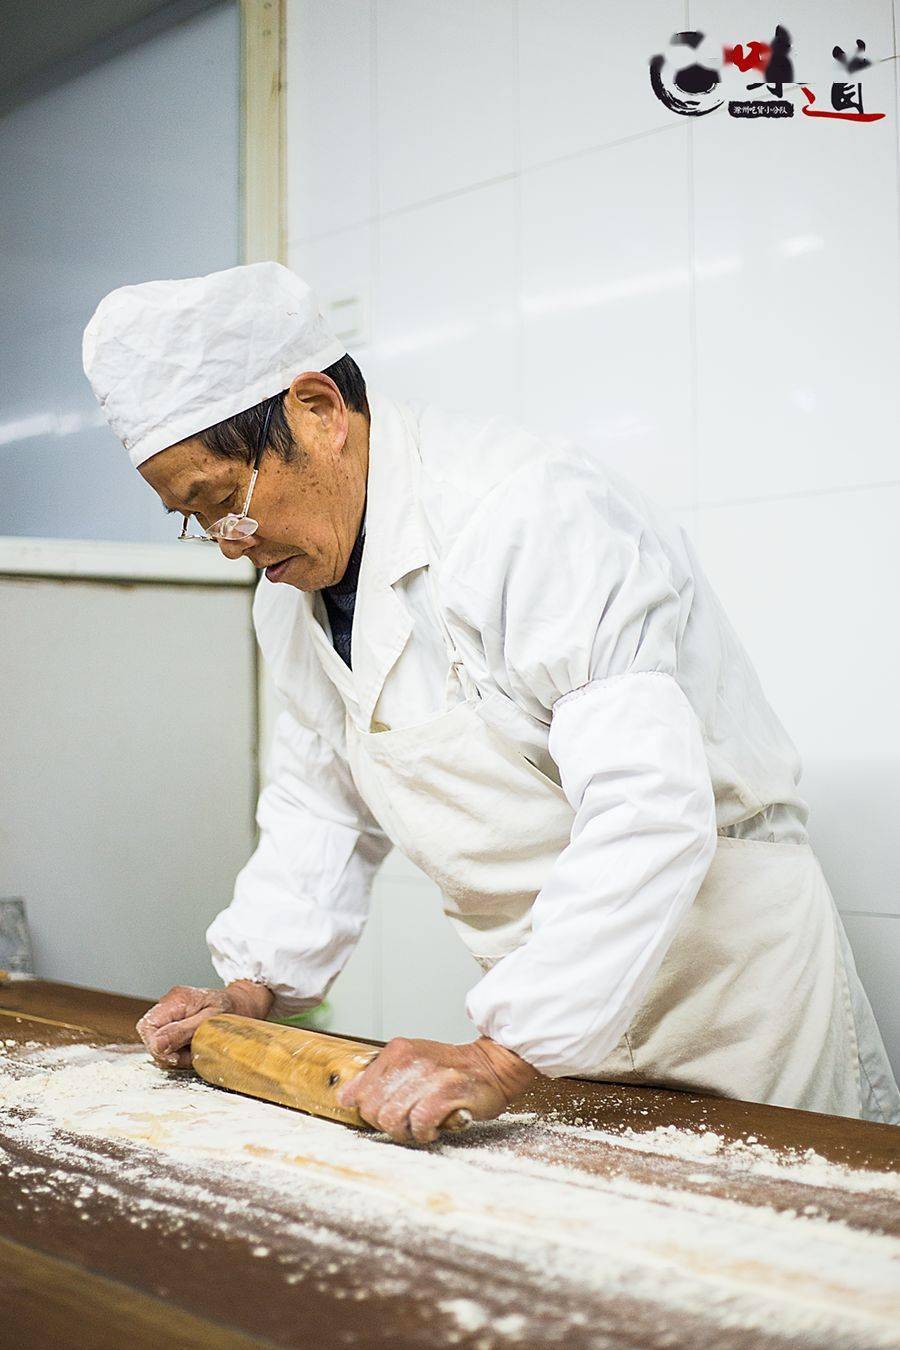 安徽美食百城千味▍滁州百店寻味16琅琊酥糖